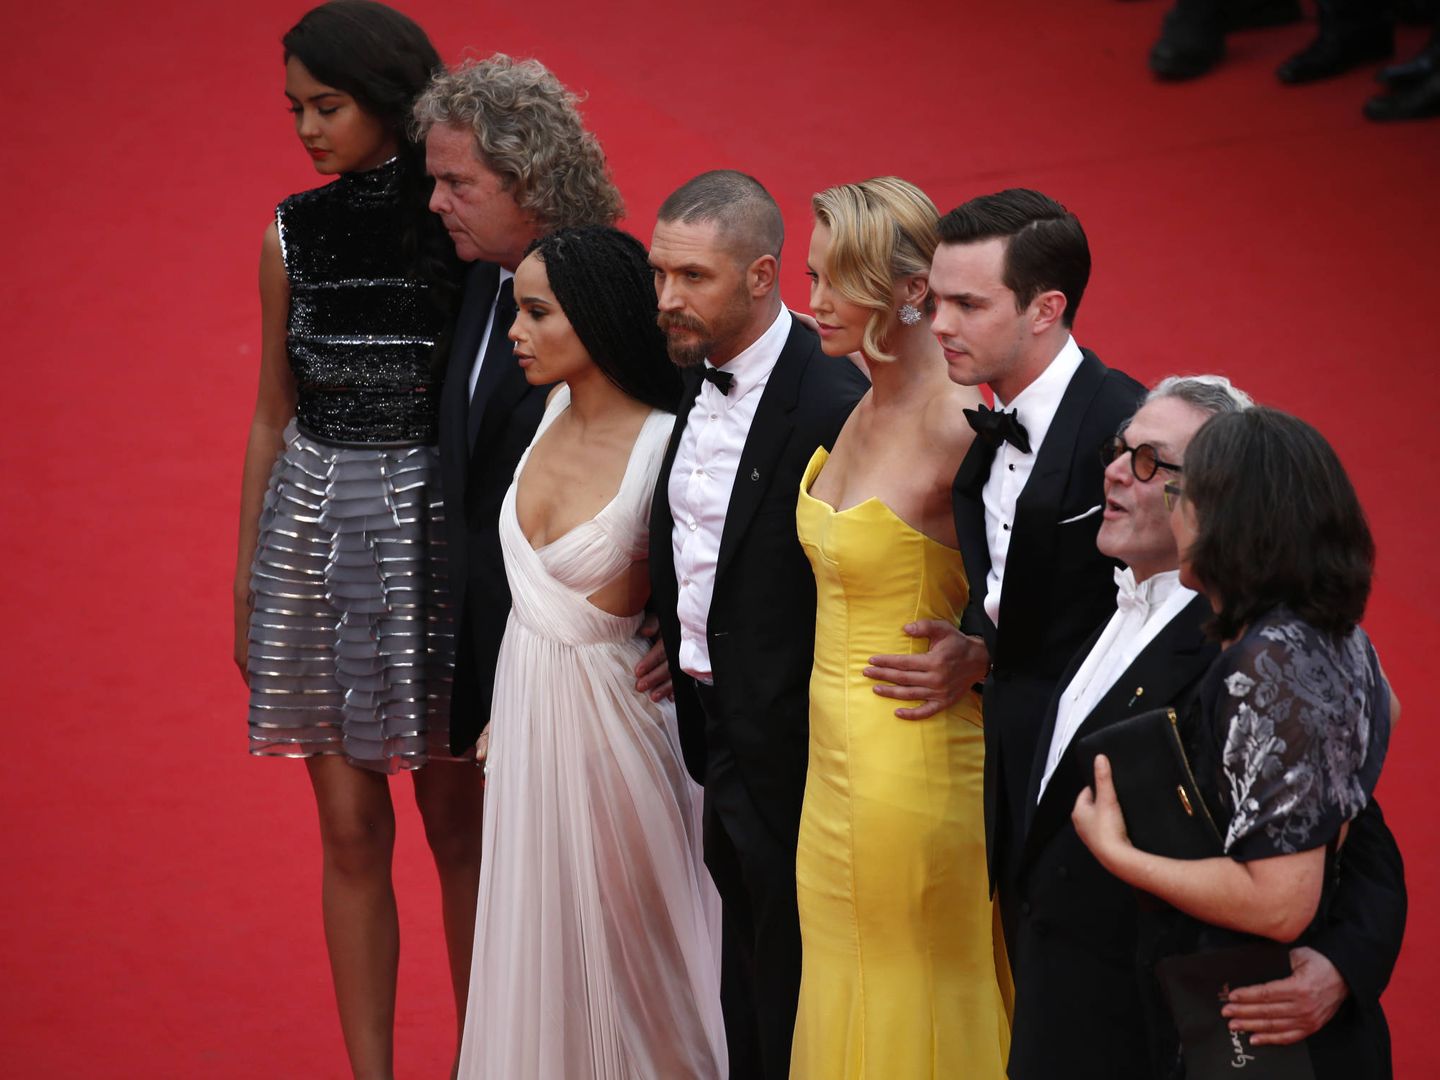  Los protagonistas de la película y su director, en Cannes. (Getty)